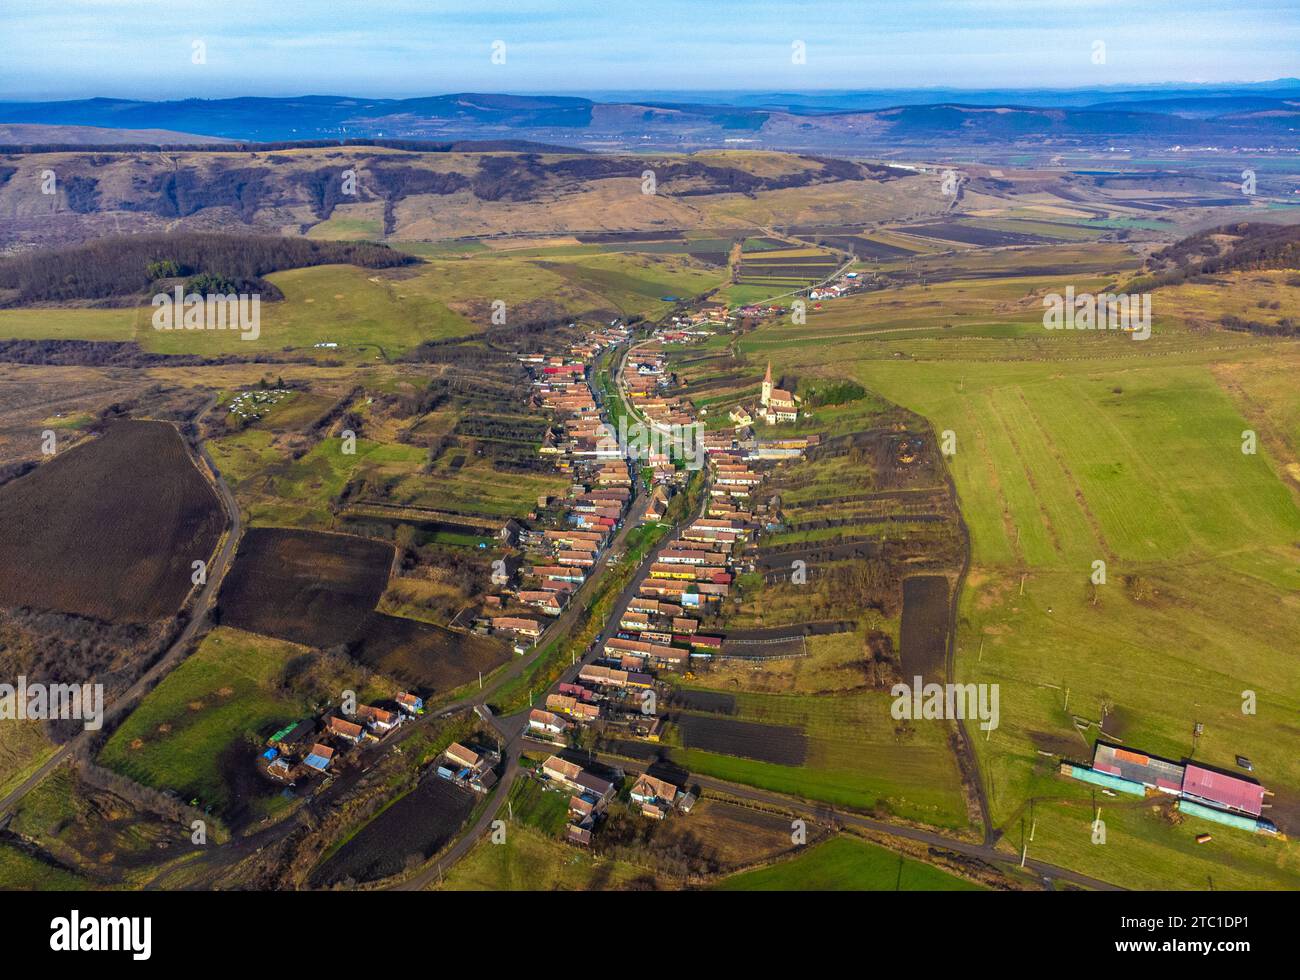 Ein Blick aus der Vogelperspektive auf ein malerisches Dorf in Rumänien, umgeben von üppigen grünen Hügeln. Stockfoto